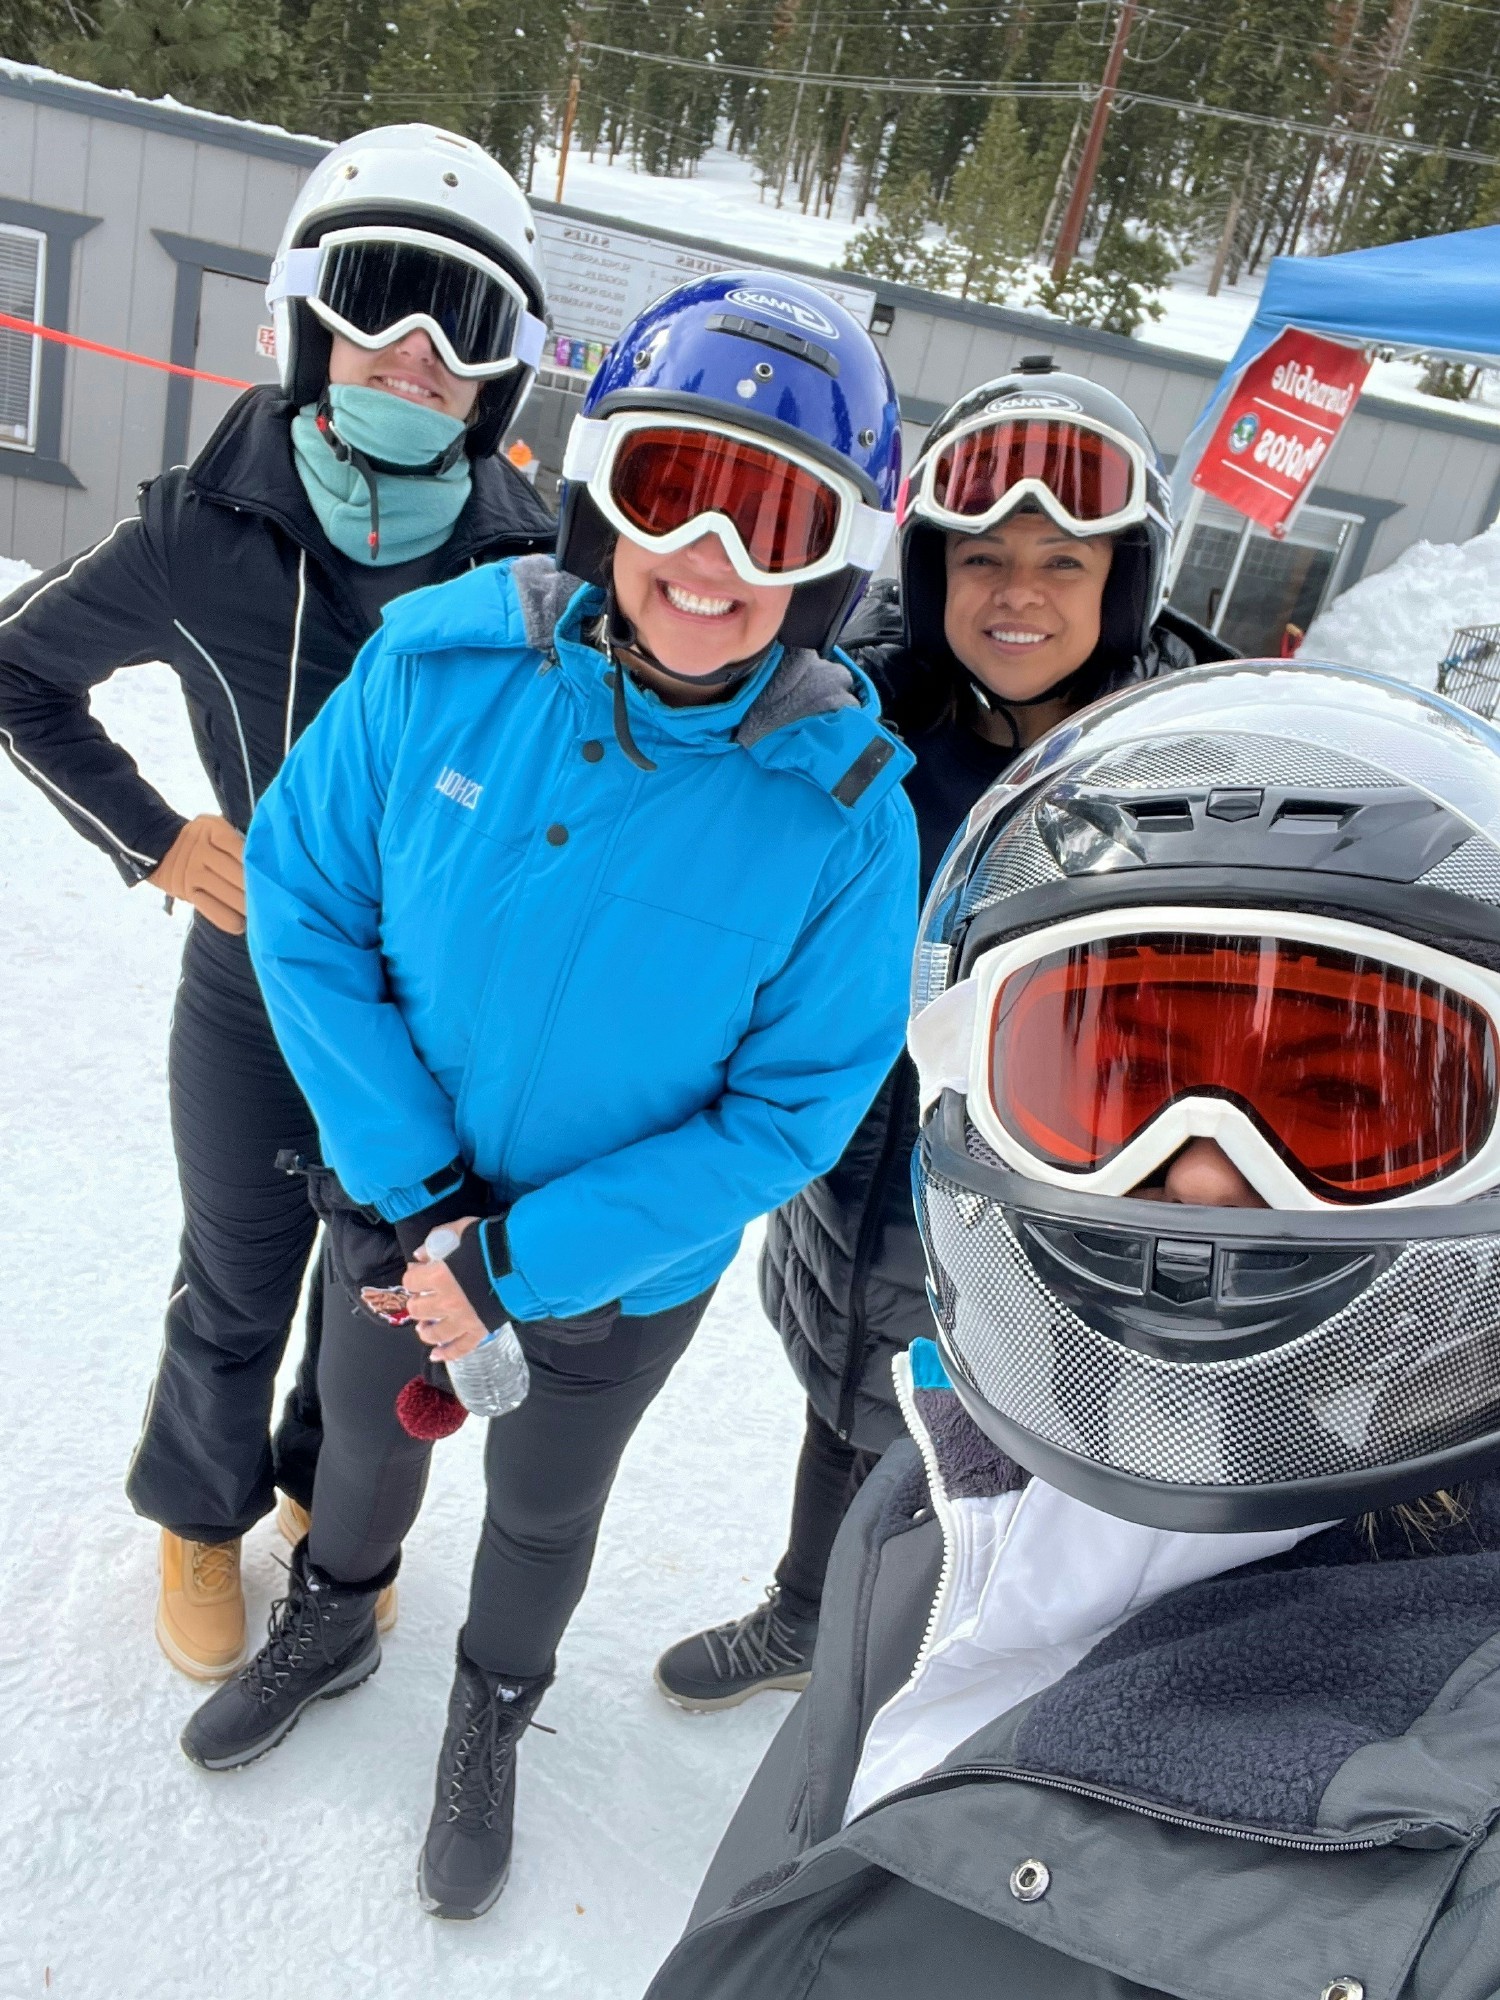 ConAm Annual Ski Trip 